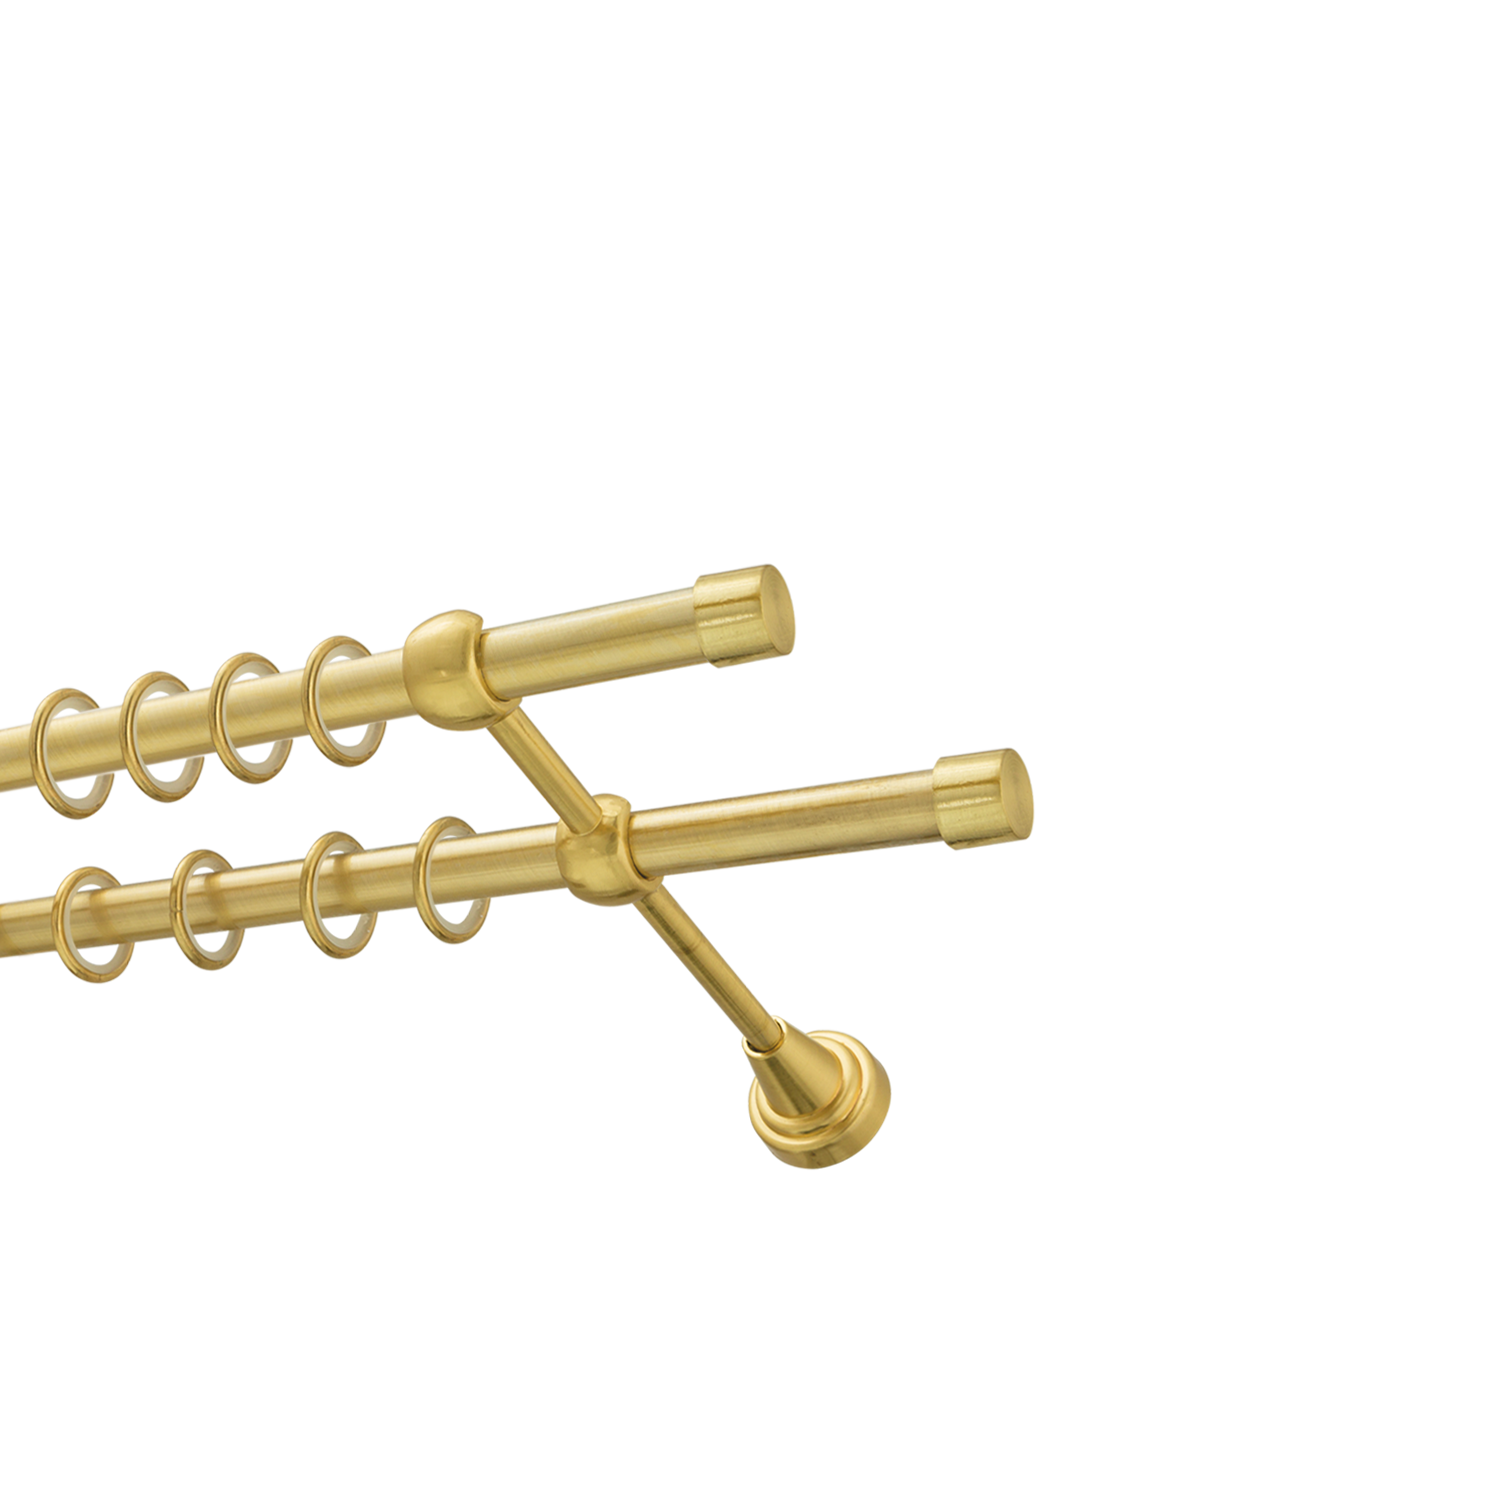 Металлический карниз для штор Заглушка, двухрядный 16/16 мм, золото, гладкая штанга, длина 140 см - фото Wikidecor.ru